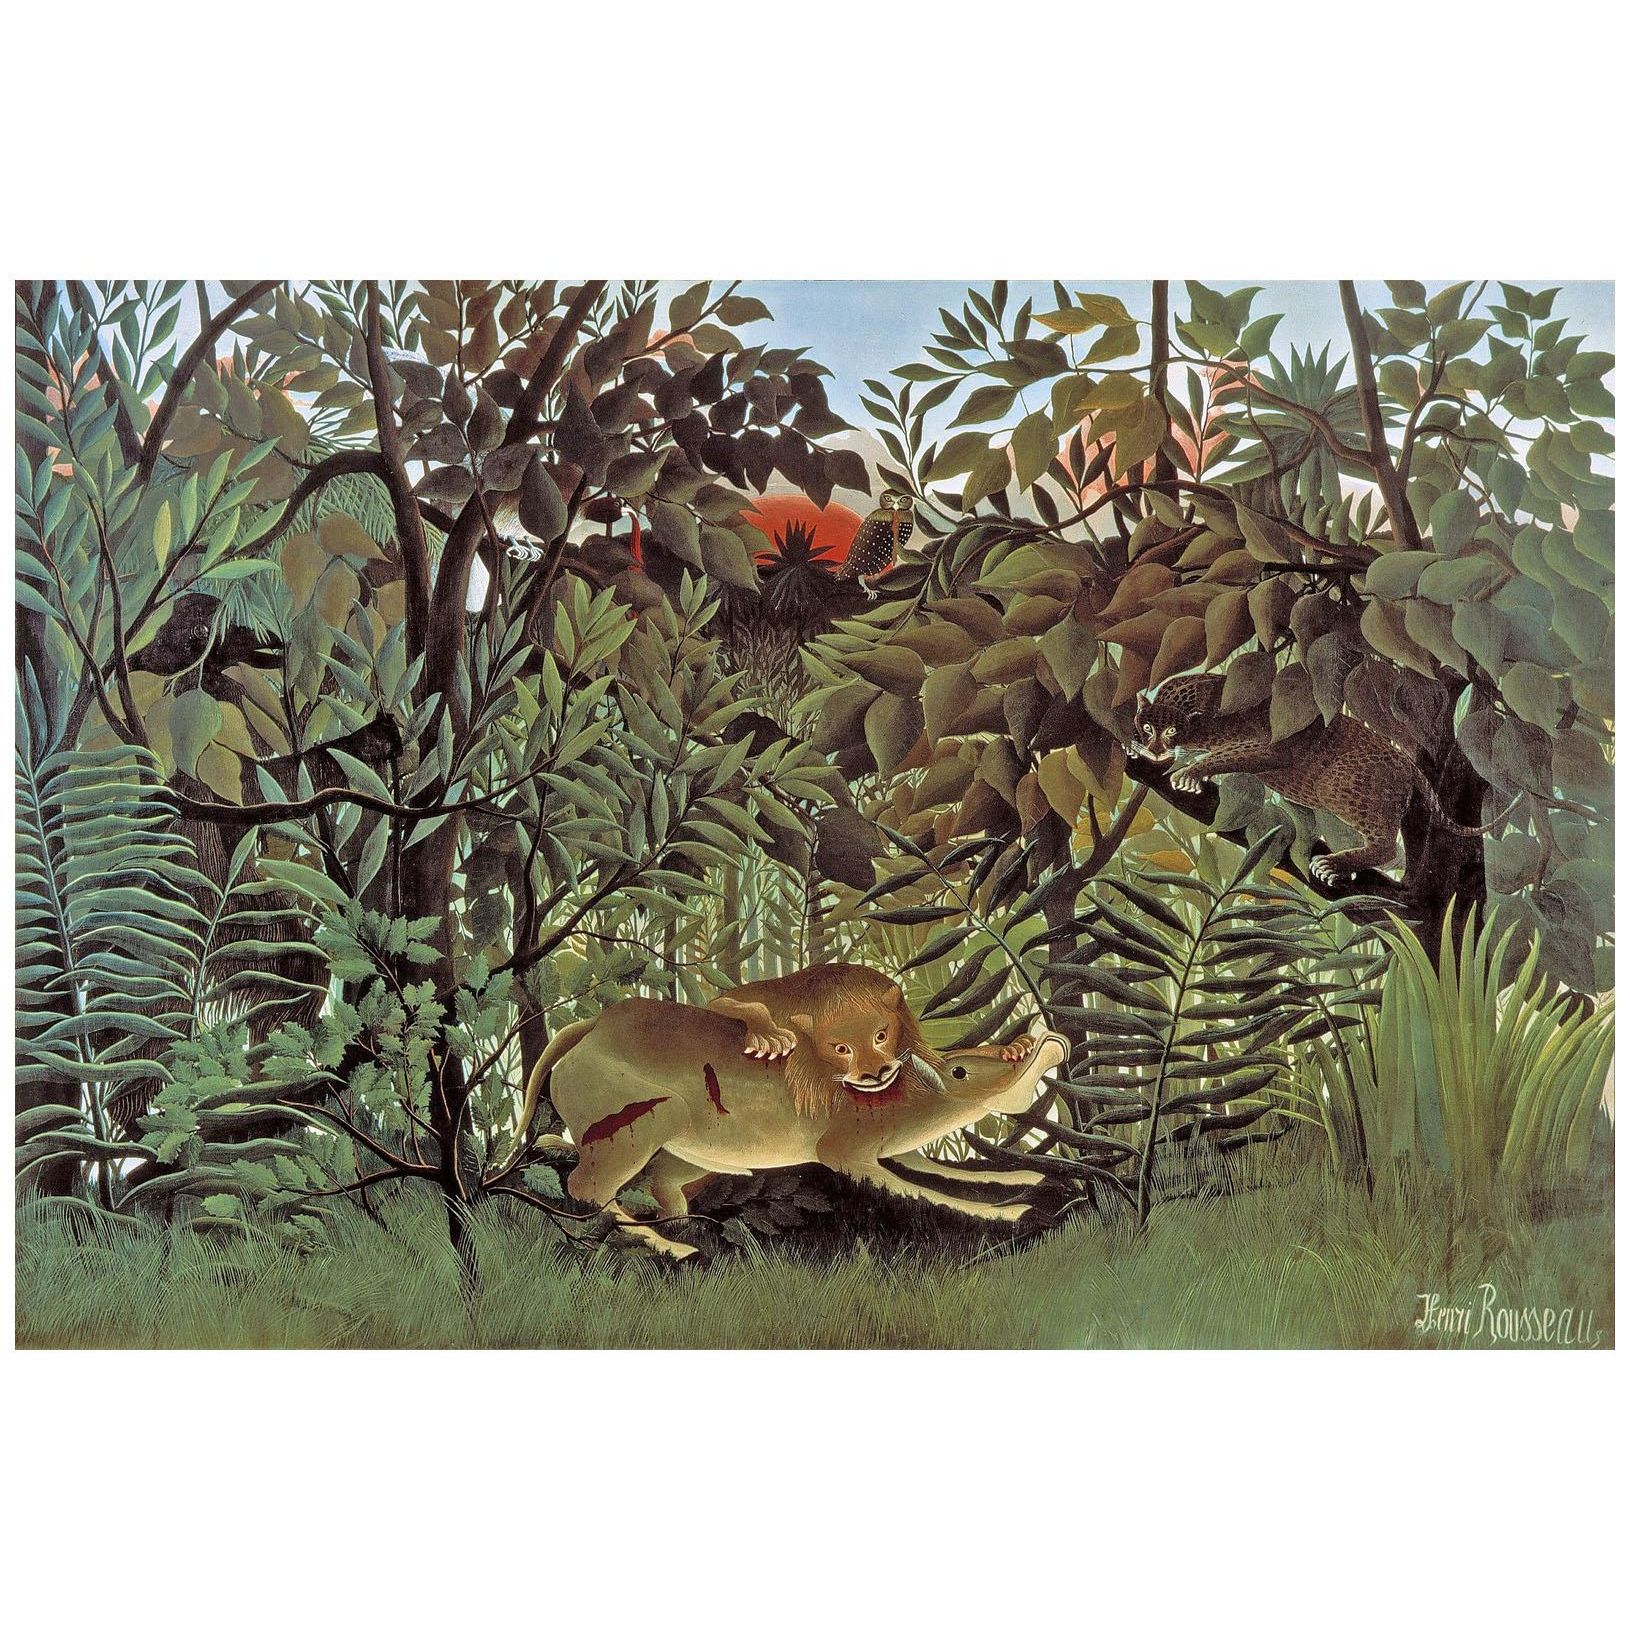 Henri Rousseau. Le lion, ayant faim, se jette sur l’antilope. 1905. Beyeler Foundation Basel